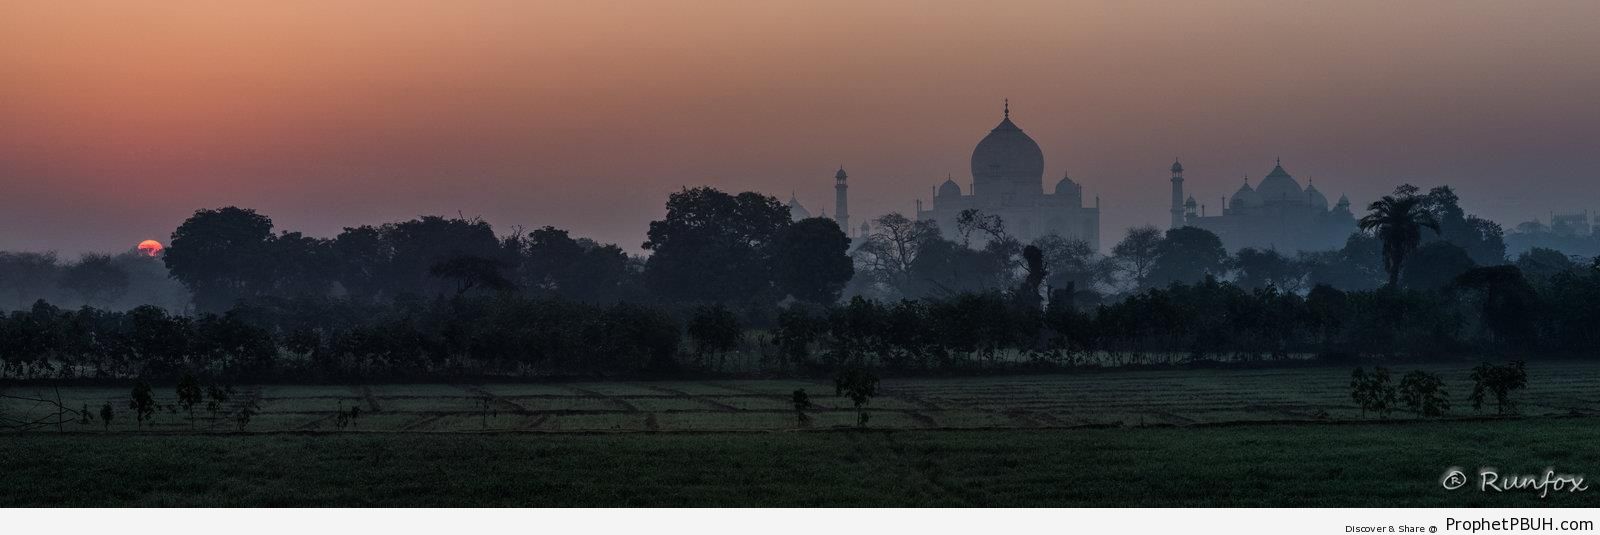 Taj Mahal Sunrise Silhouette - Agra, India